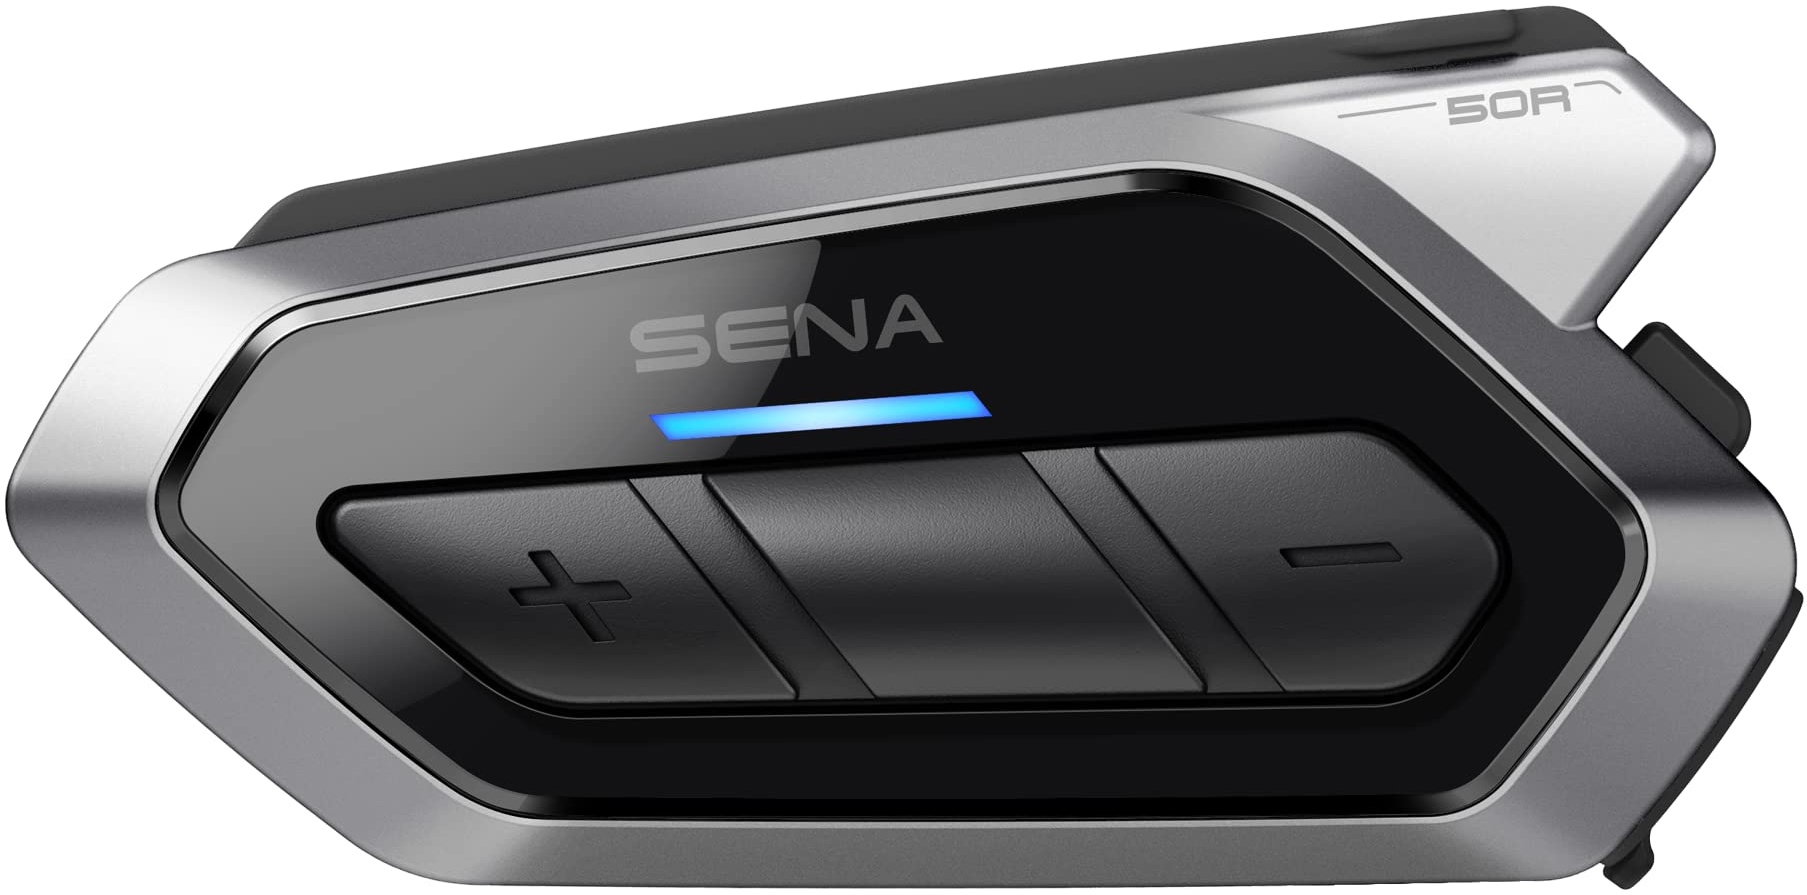 Sena 50R Motorrad Bluetooth Kommunikationssystem mit 3-Tasten Bedieneinheit und Sound by Harman Kardon, integriertem Mesh Intercom System und Premium Mikrofon & Lautsprechern, Doppelpack